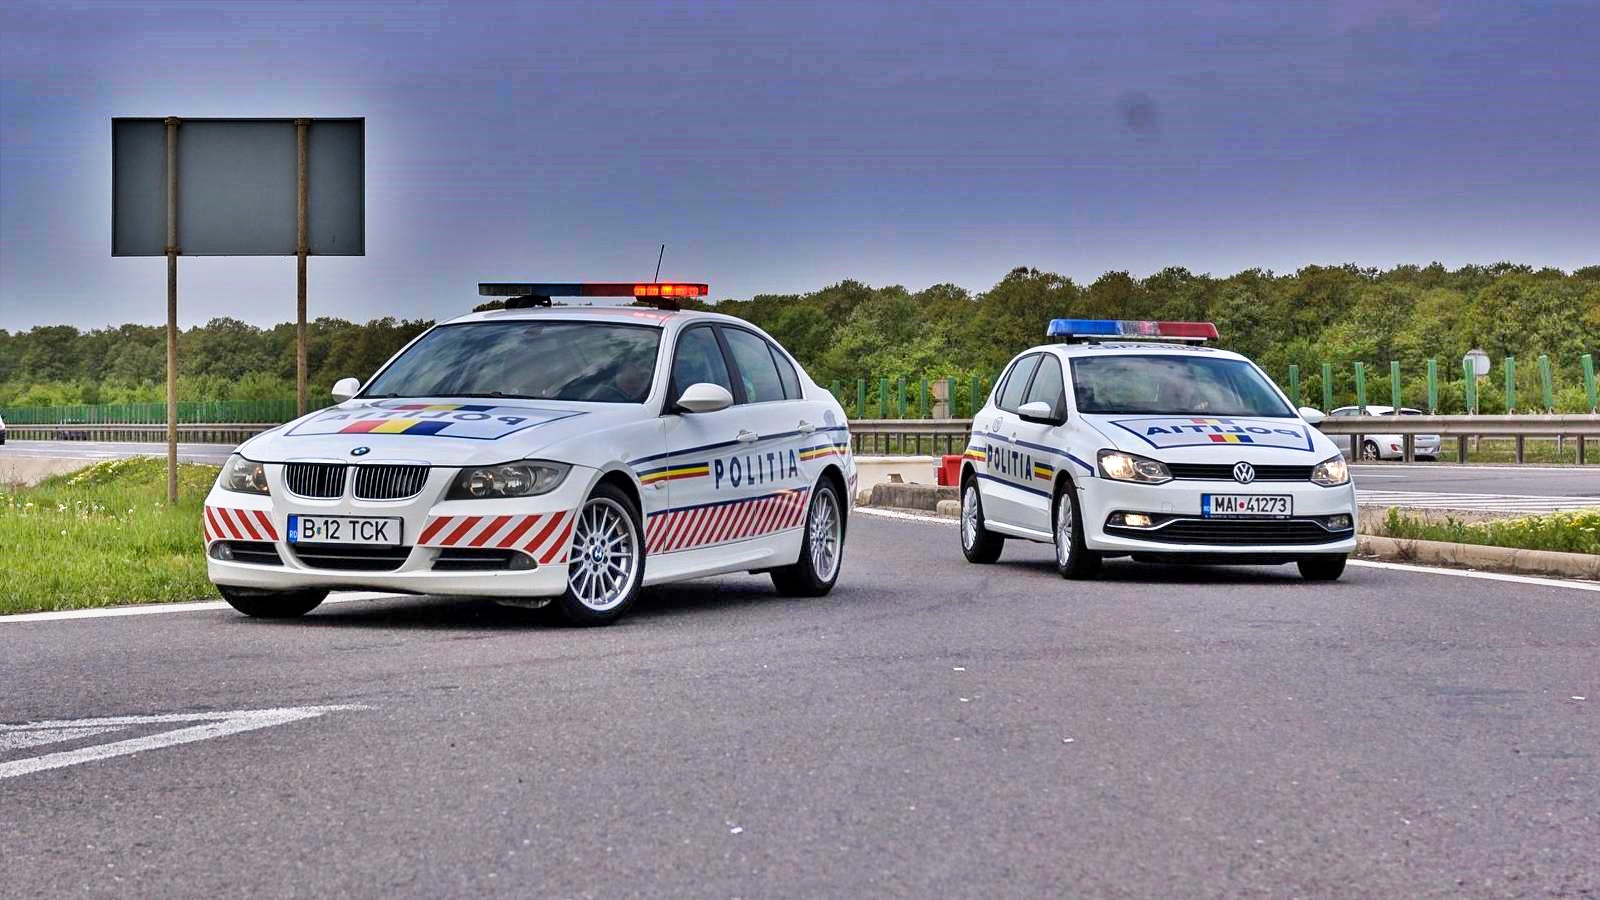 WARNUNG der rumänischen Polizei vor Autobetrug